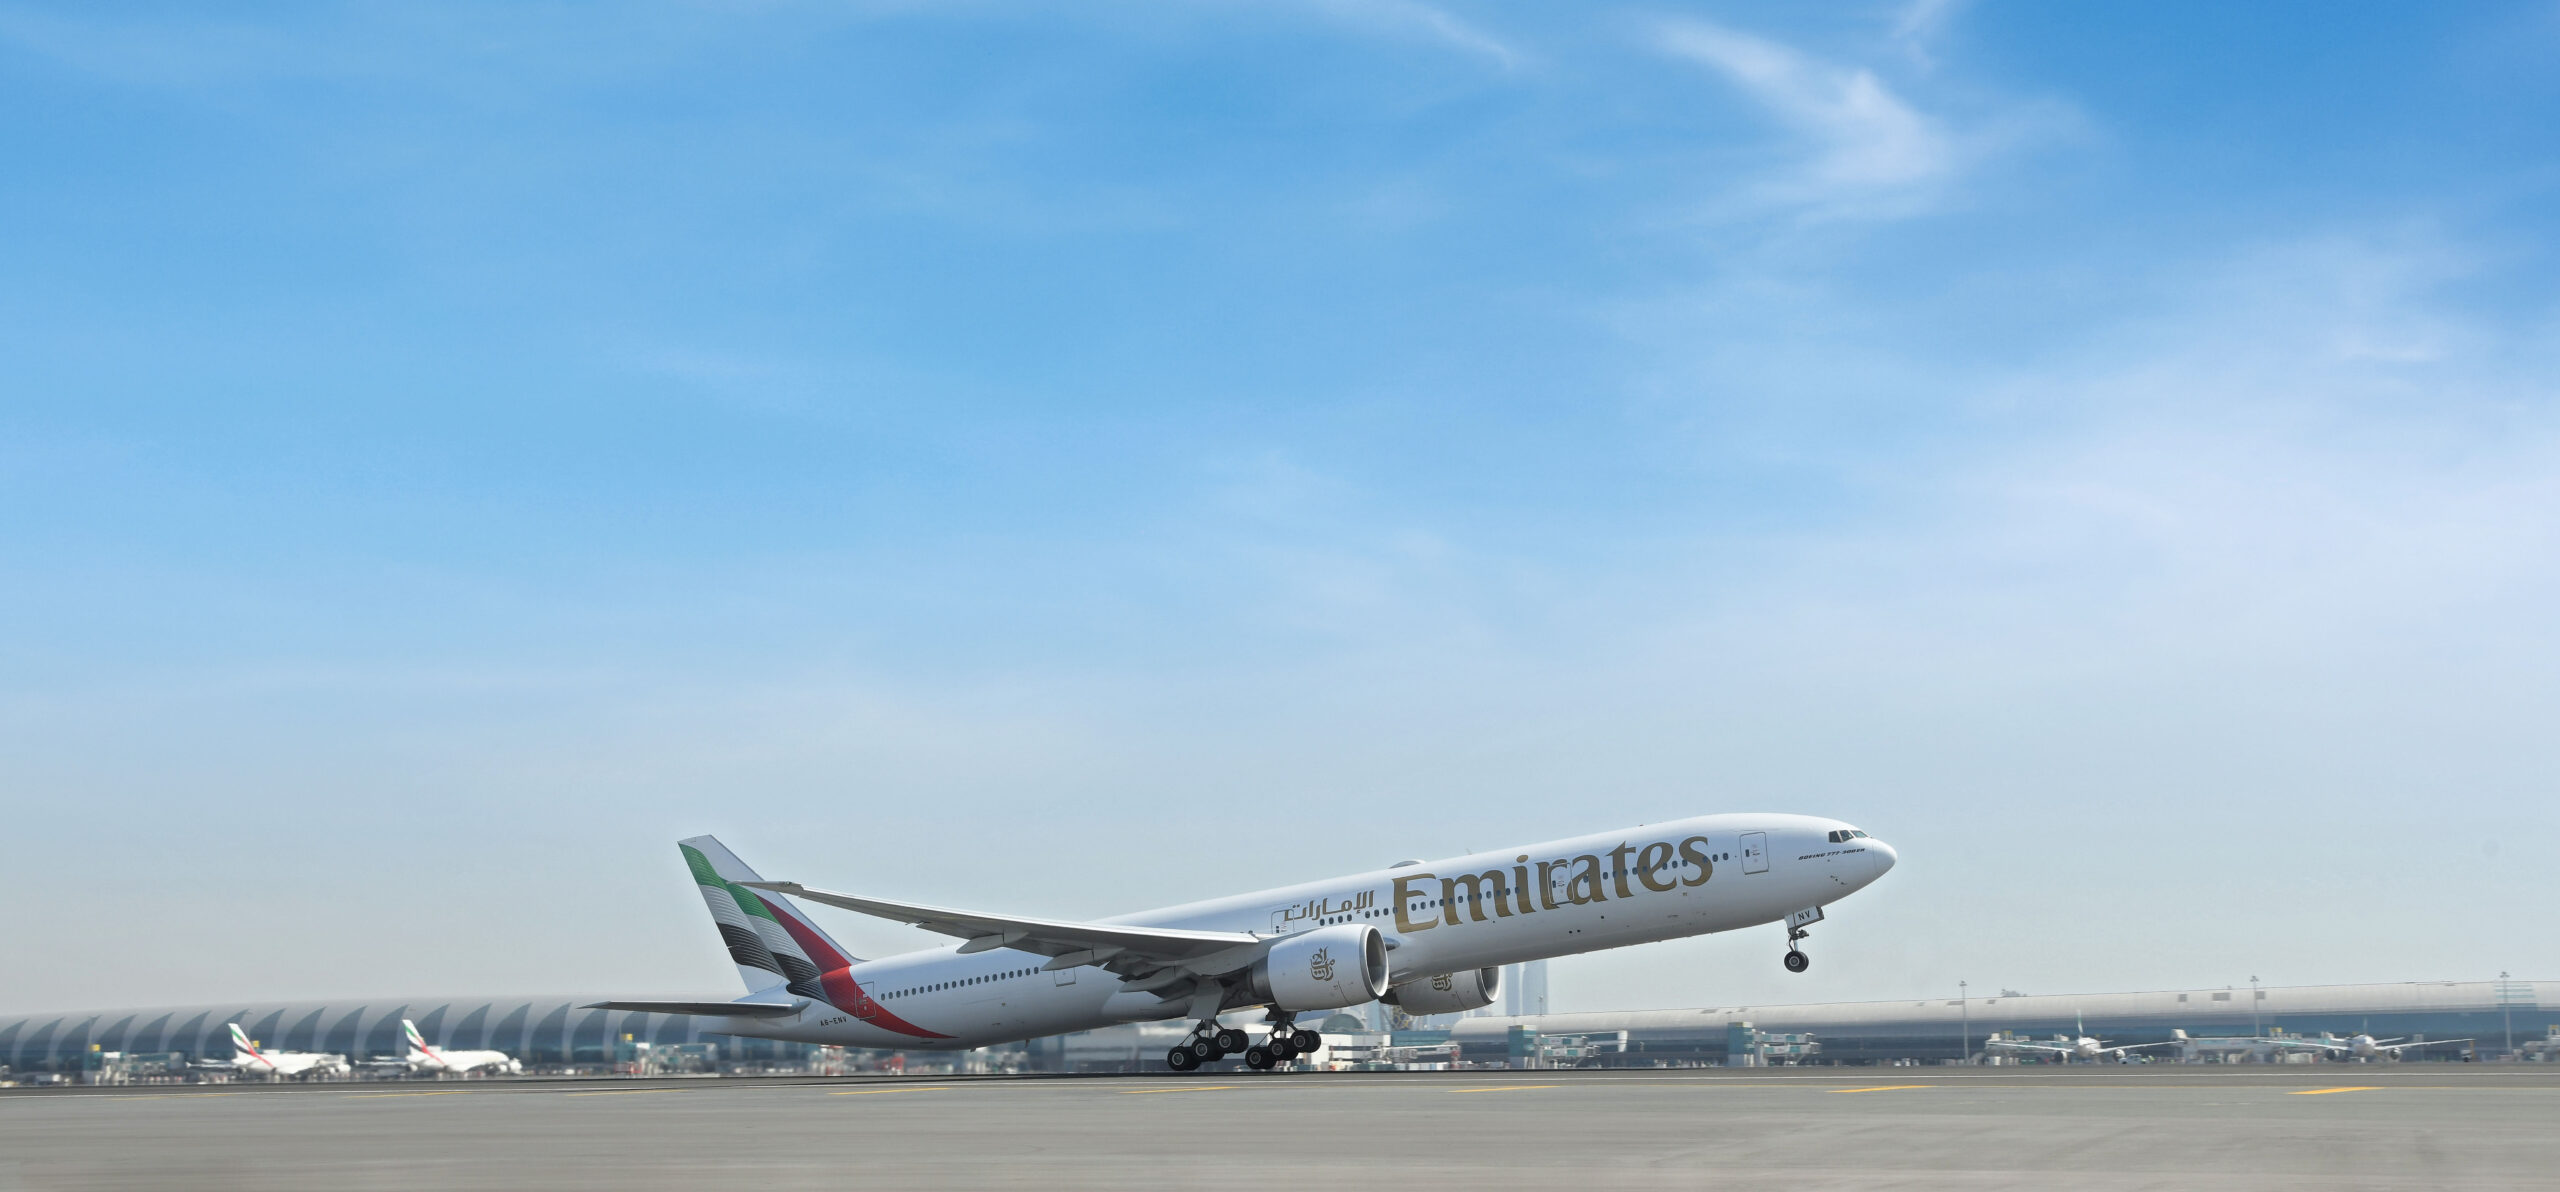 Emirates 777 departs from Dubai Airport